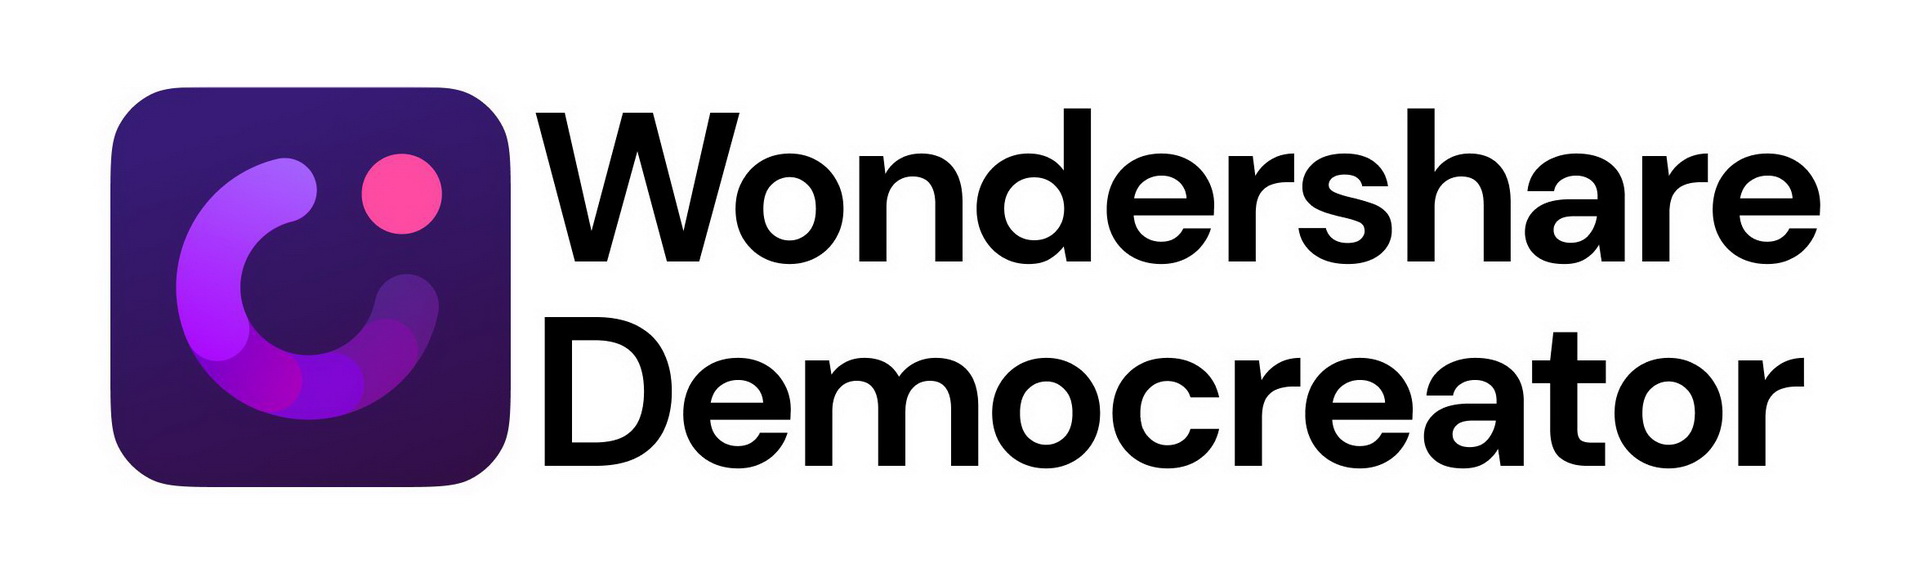 Wondershare Democreator il software definitivo di registrazione schermo e video editing